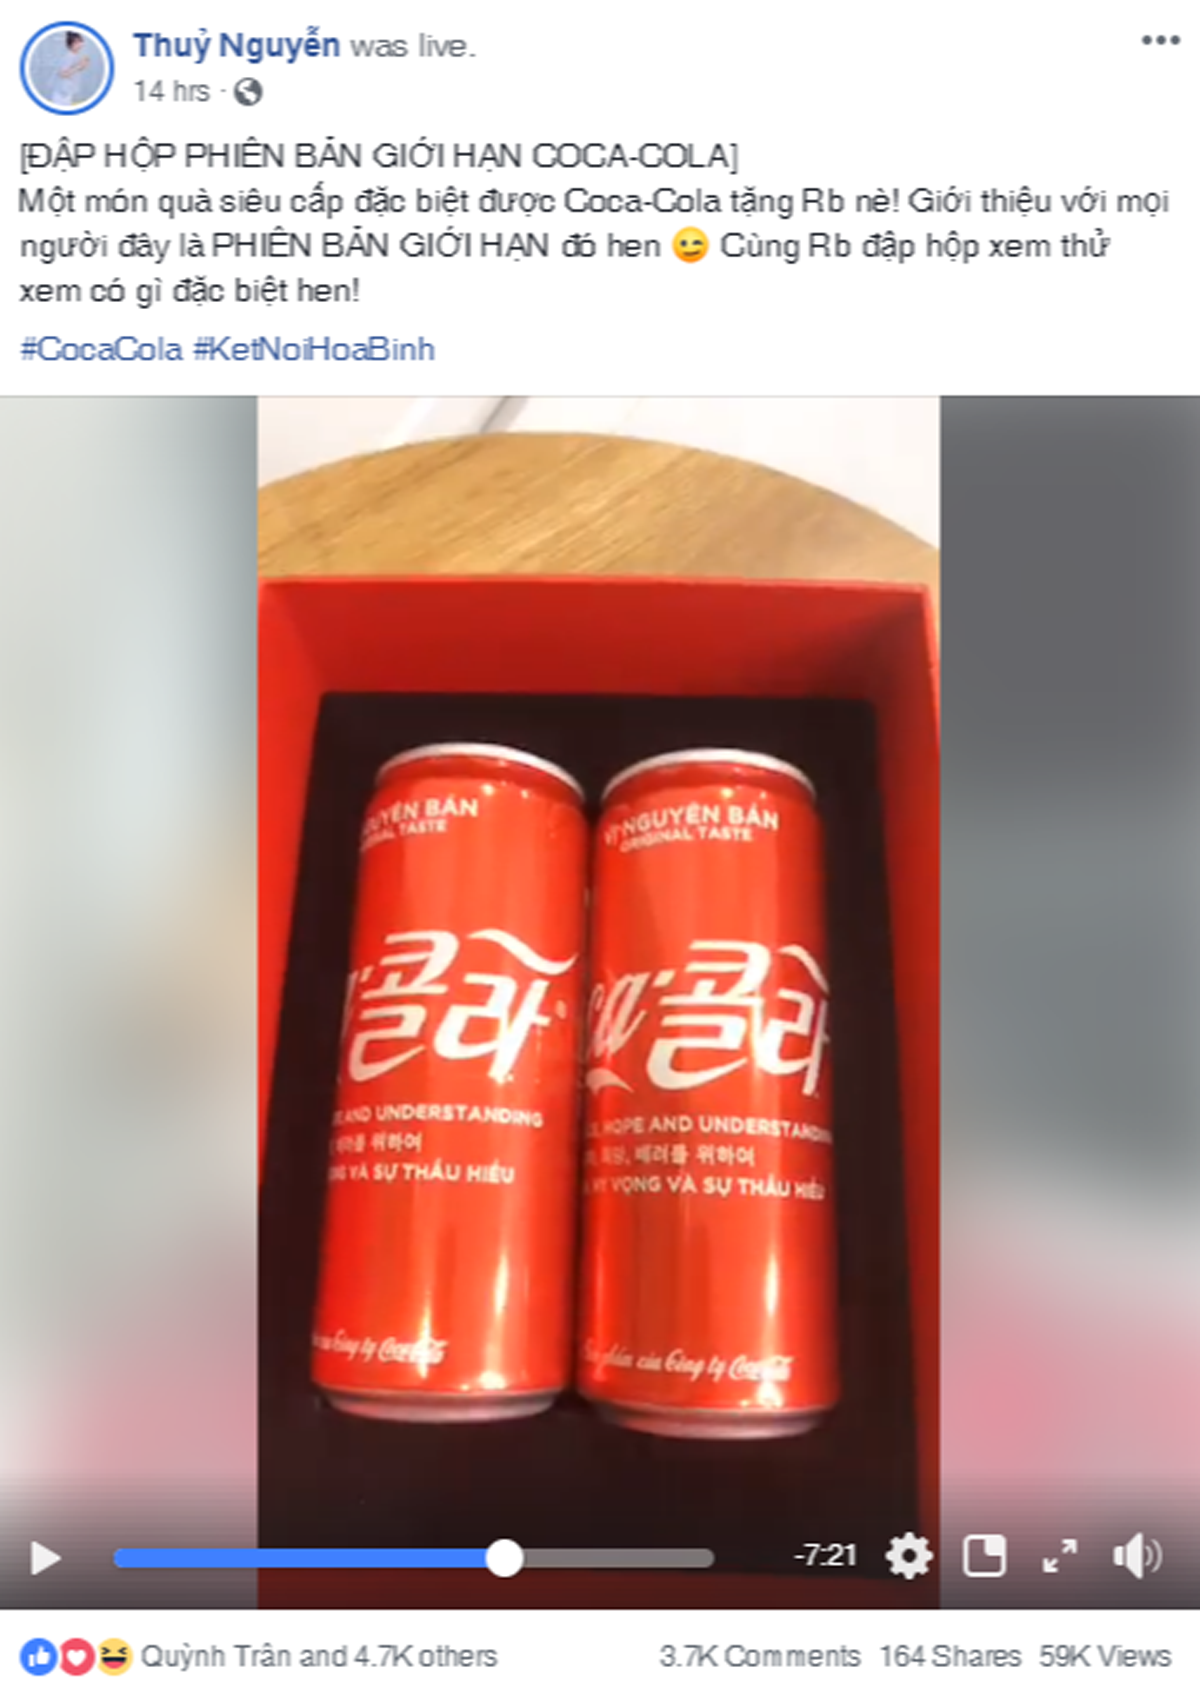 Fan của hot girl 9X Thủy Nguyễn rần rần khi cô nàng khui quà mẫu lon Coca-Cola phiên bản giới hạn này